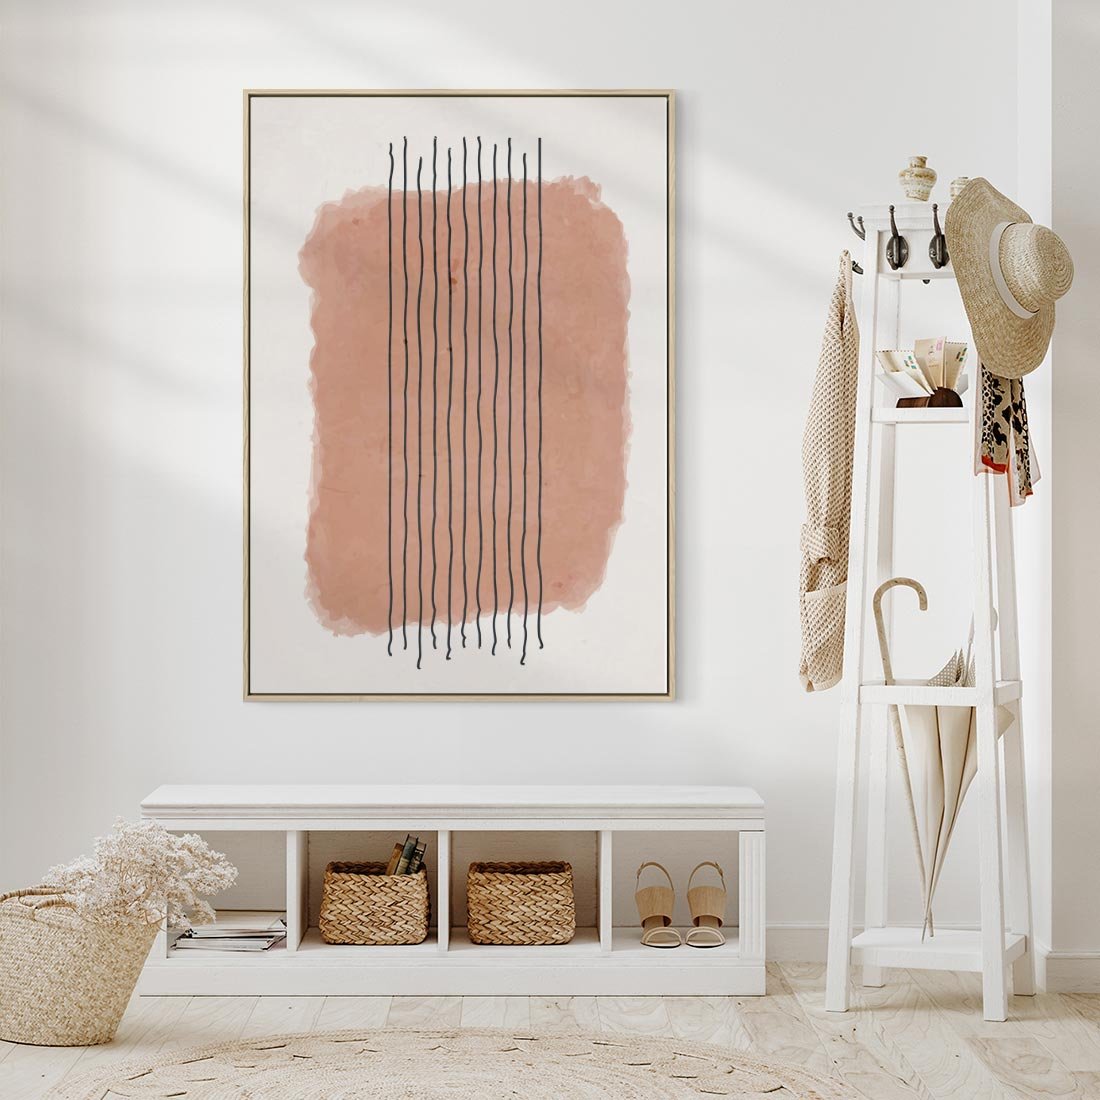 Obraz w ramie 50x70 - Rozmyte Widzenia - abstrakcyjna akwarelowa plama, nieregularne kreski - rama drewno